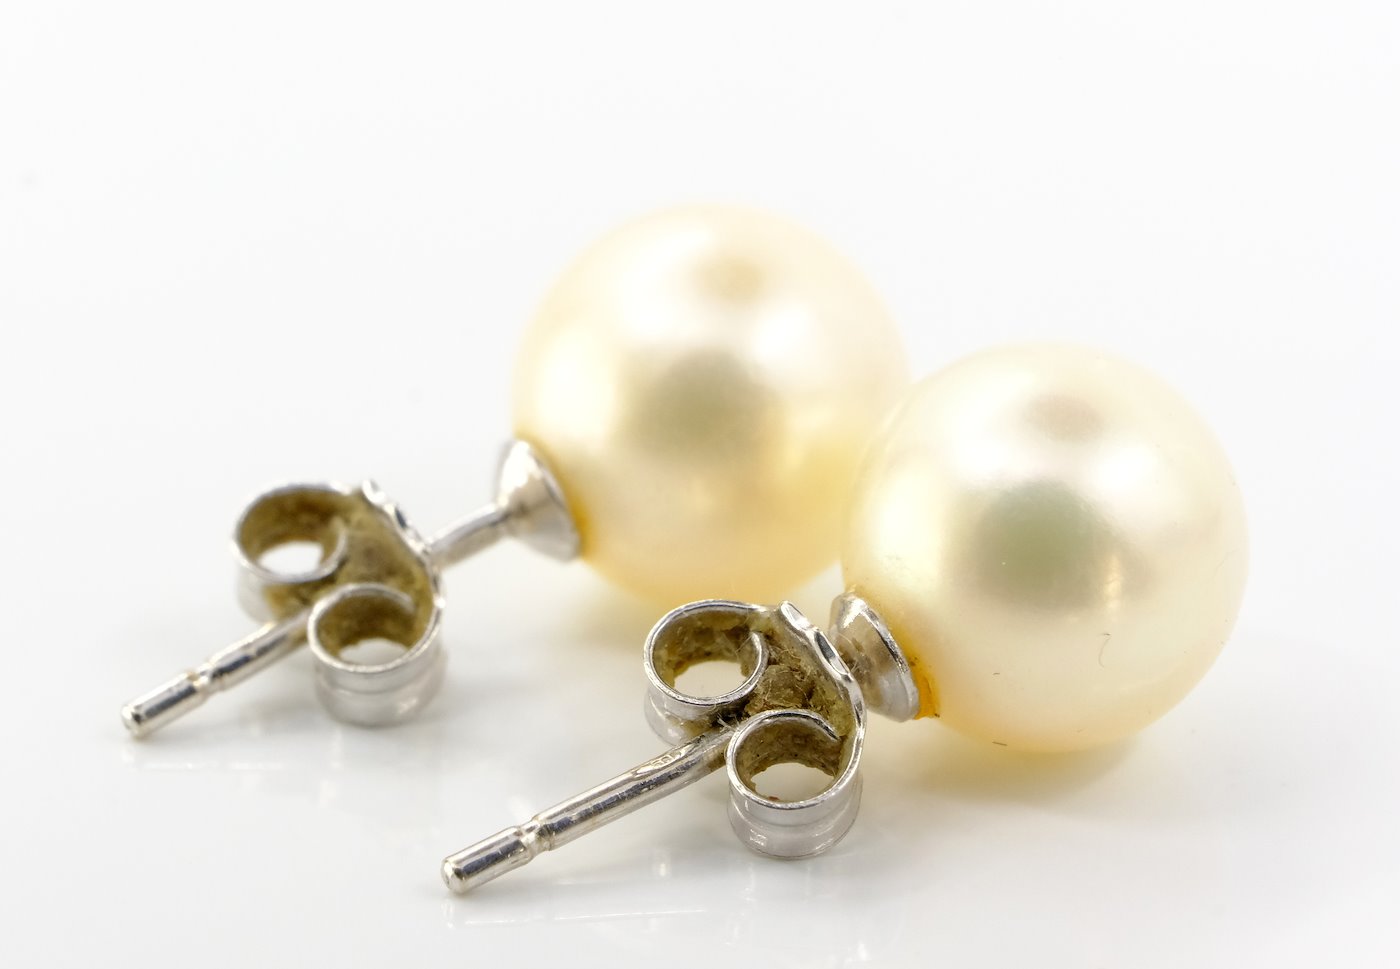 .. - Zlaté náušnice s perlou, zlato 585/1000 hrubá hmotnost 2,56 g